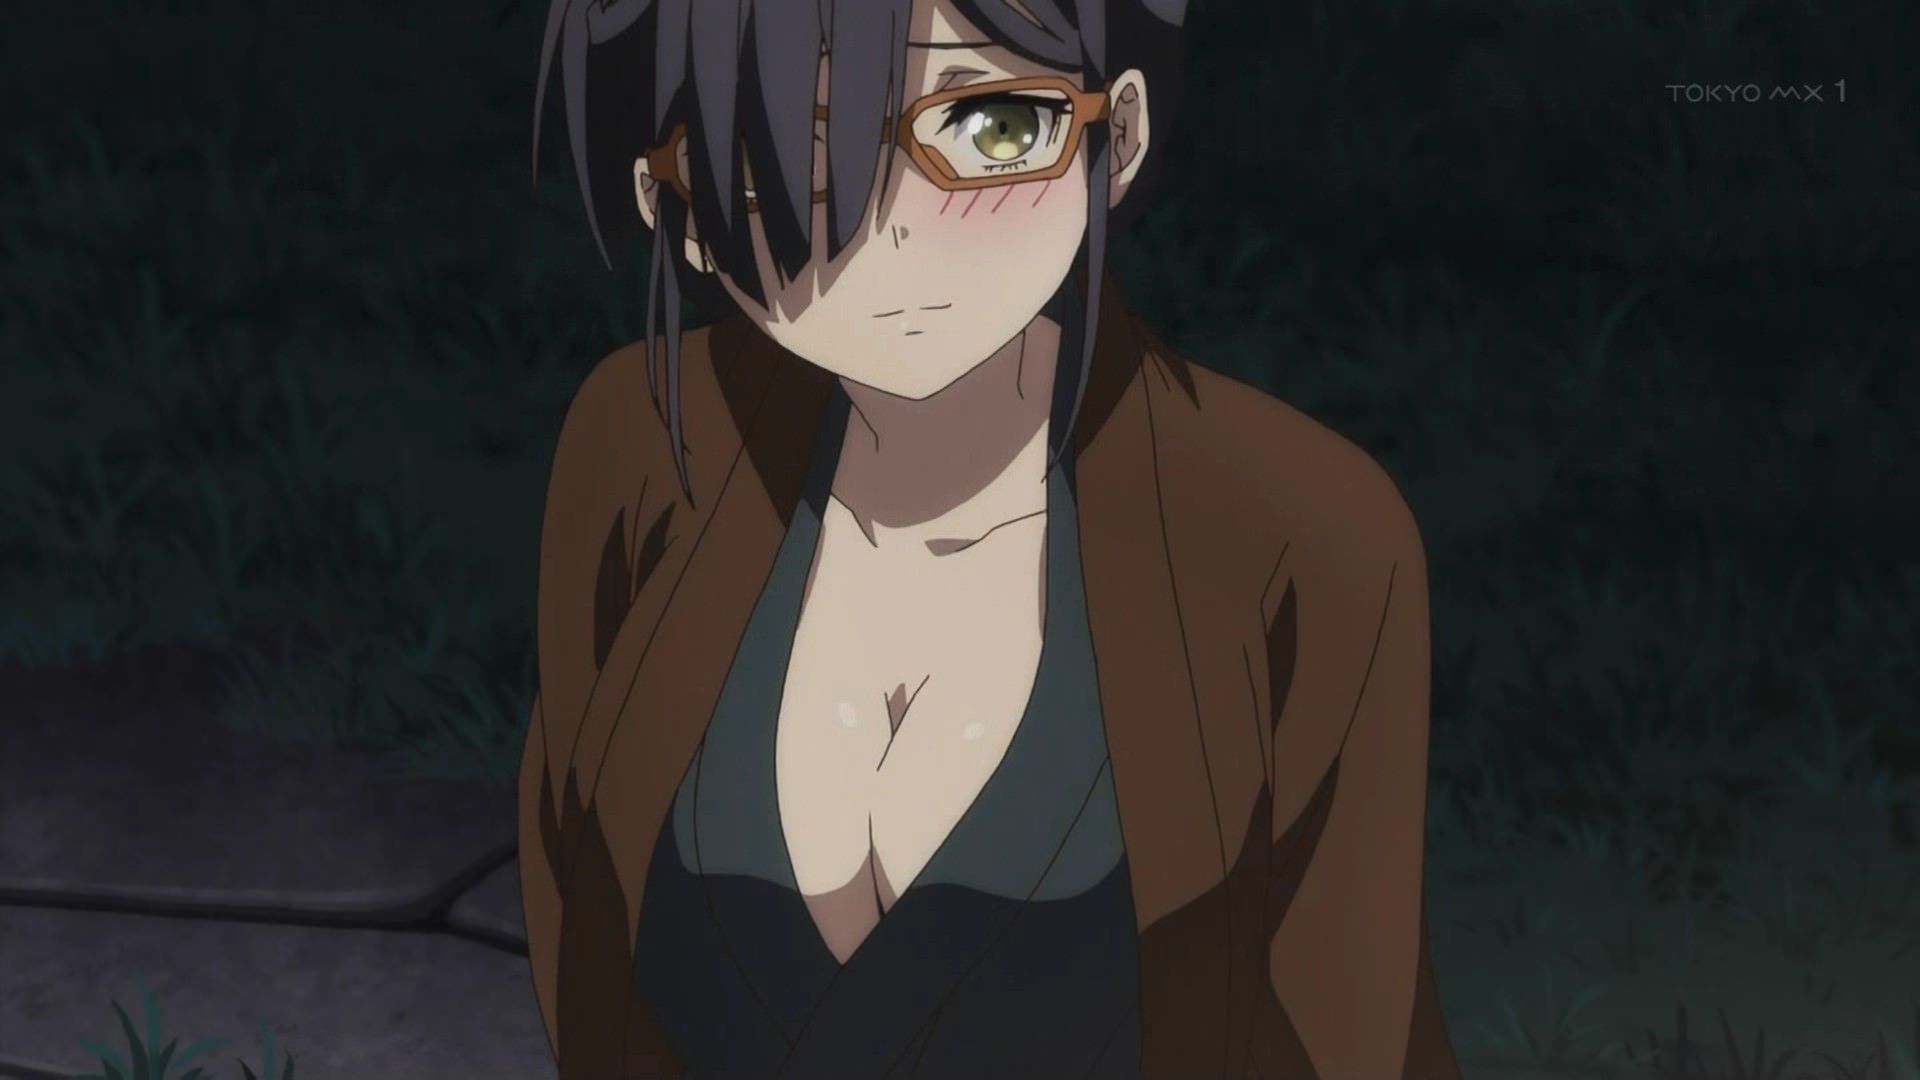 [Image] [Animegataris] Koenji Yoshiko-chan erotic cute too awesome wwwww 9